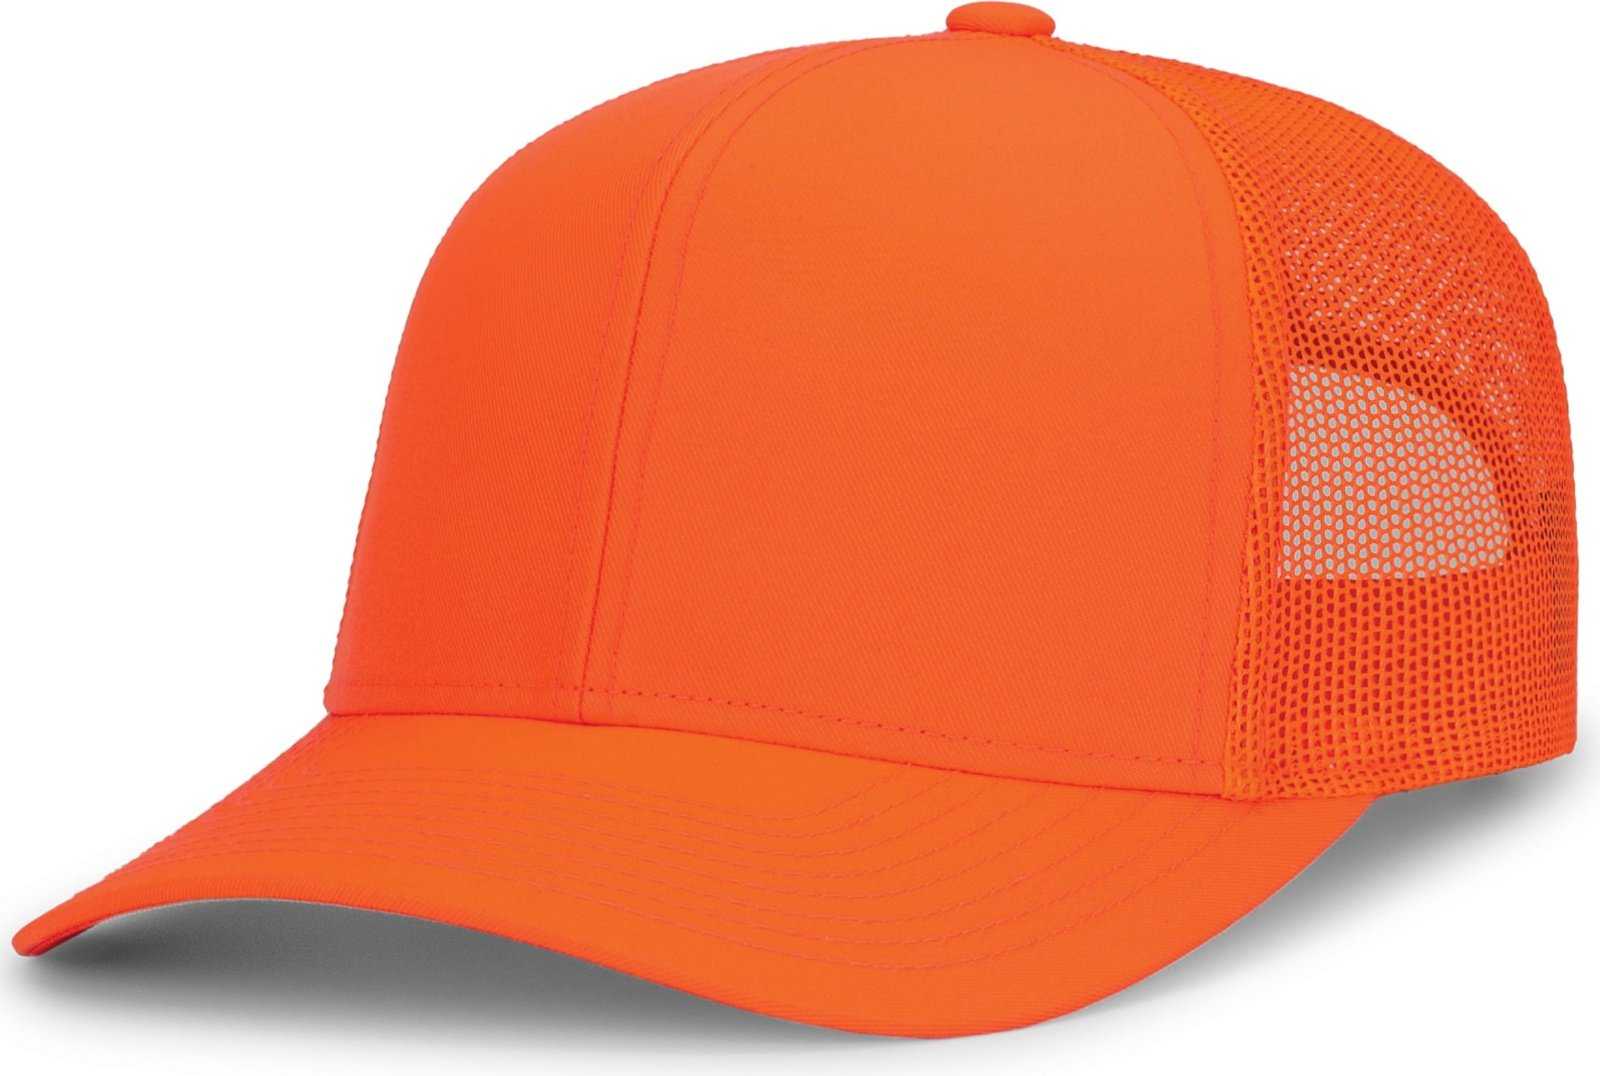 Pacific Headwear 104C Trucker Snapback Cap - Blaze Orange - HIT a Double - 1